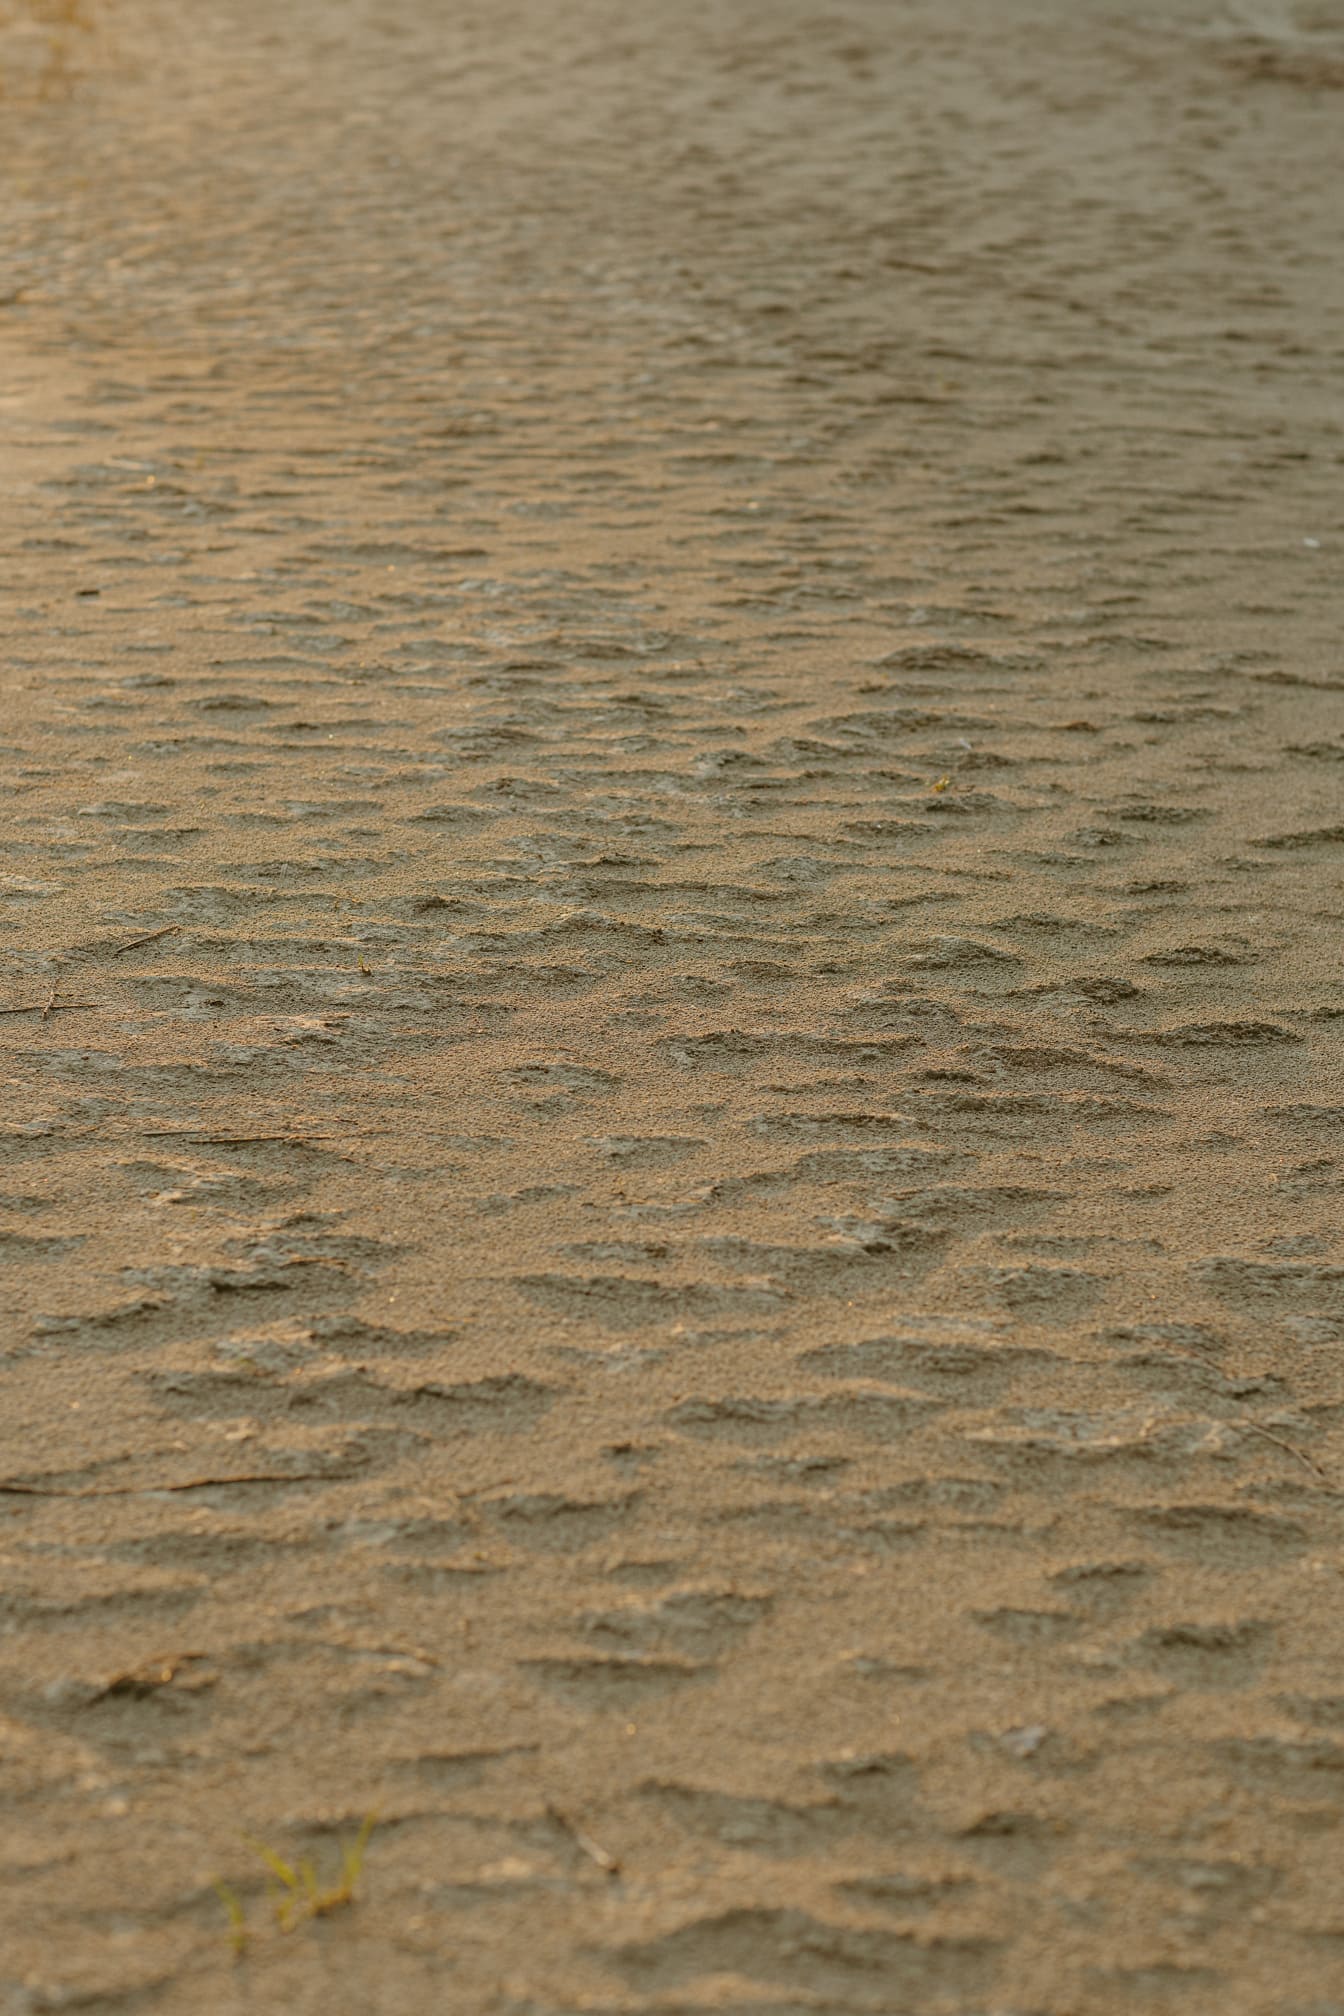 Textur von rauem, hellbraunem Sand auf dem Boden